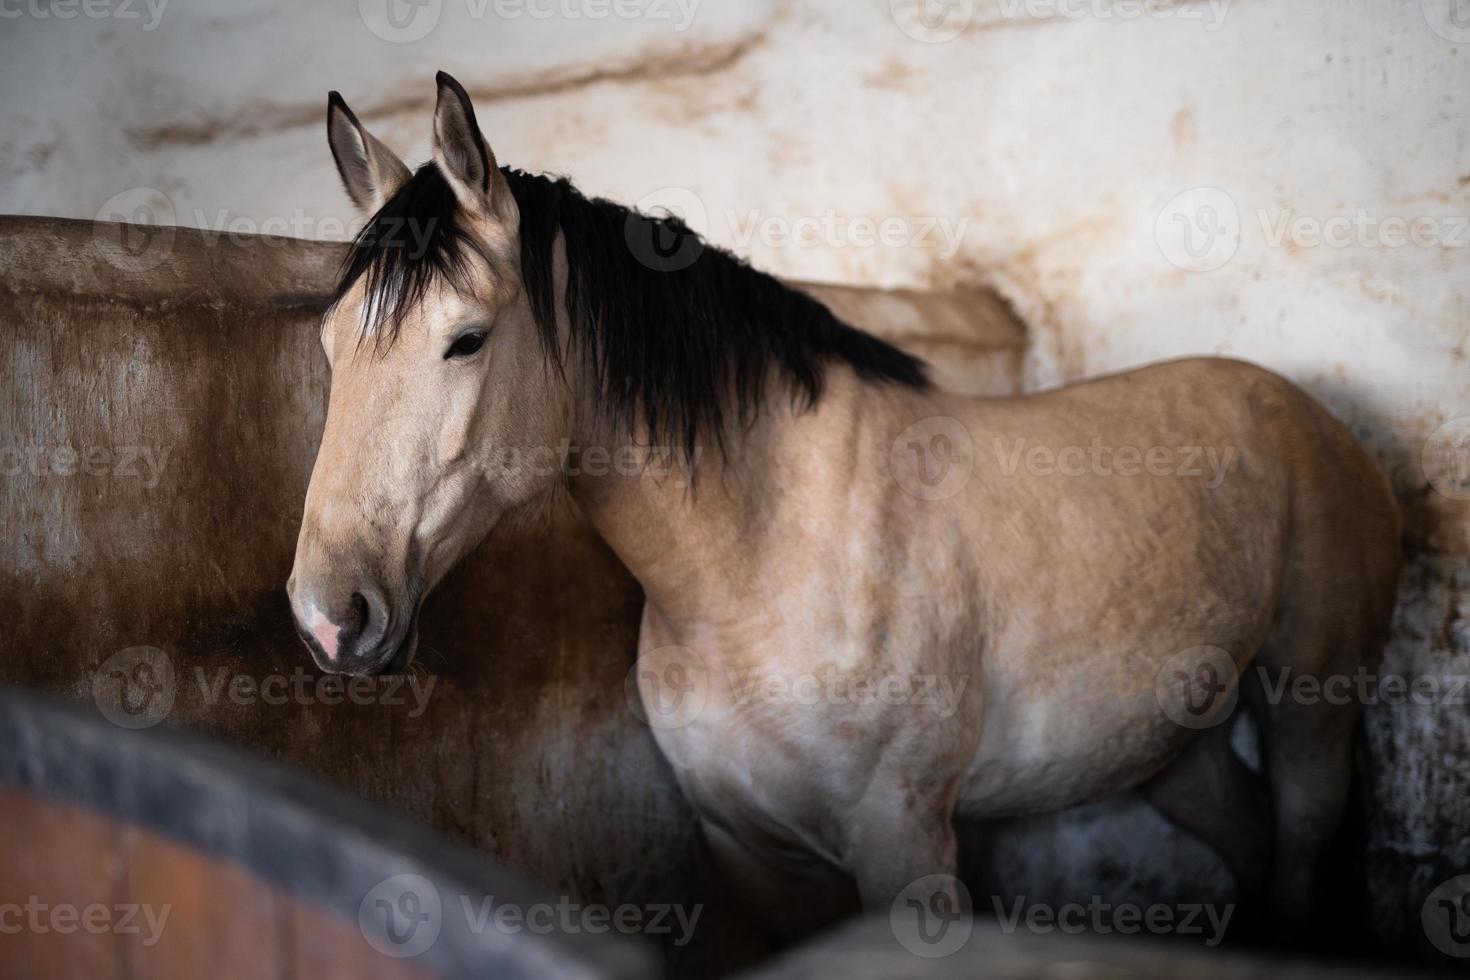 een mooi paard in de stal foto